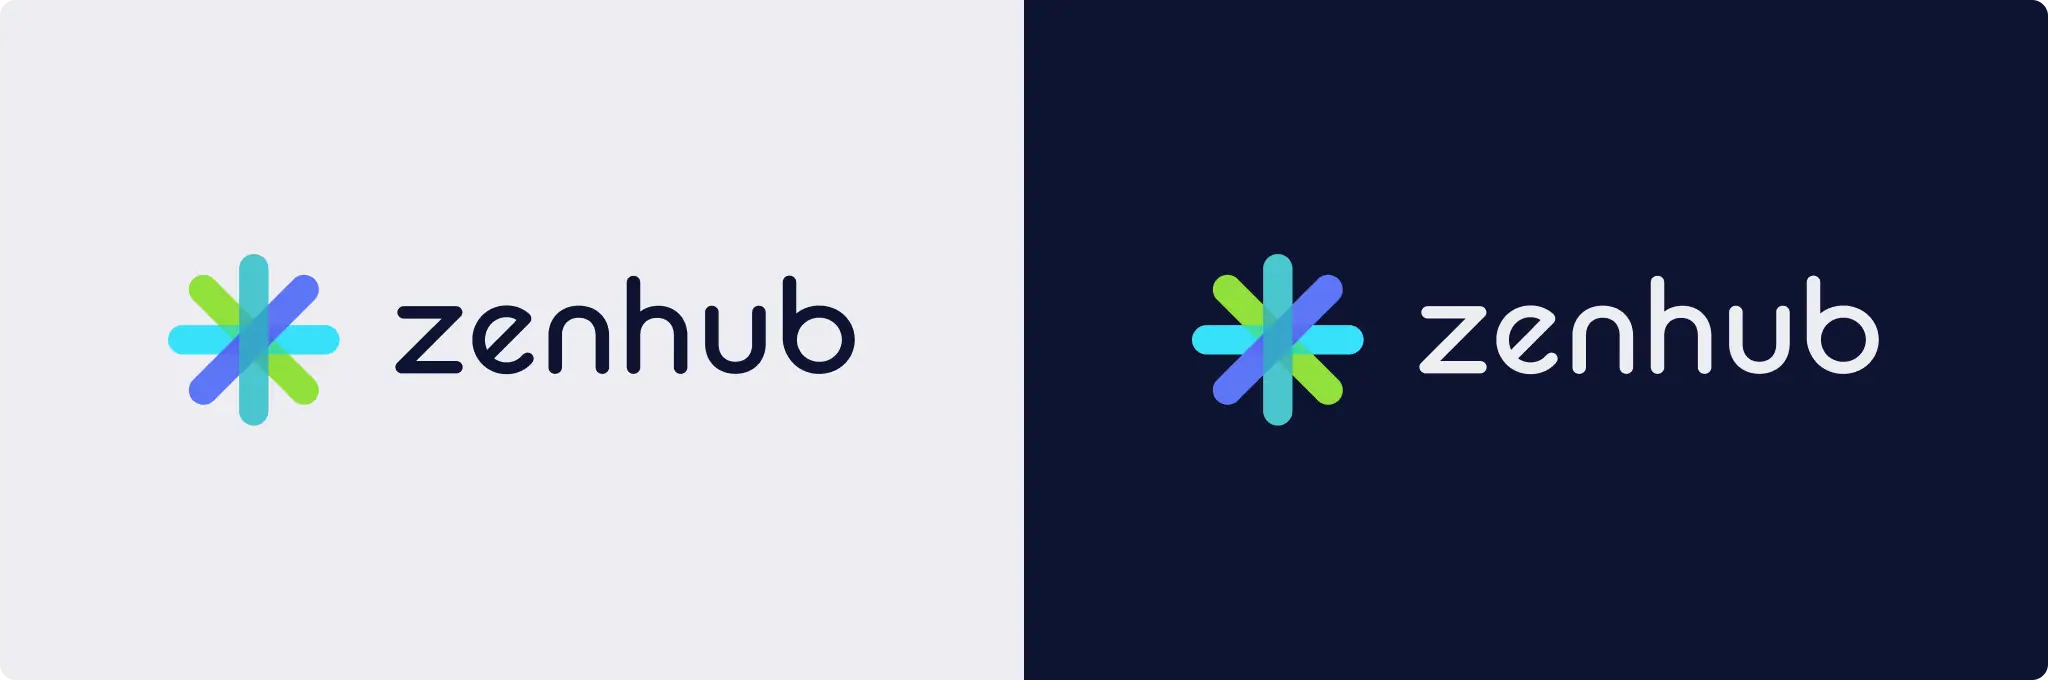 the dark mode and light mode version of the new Zenhub logo